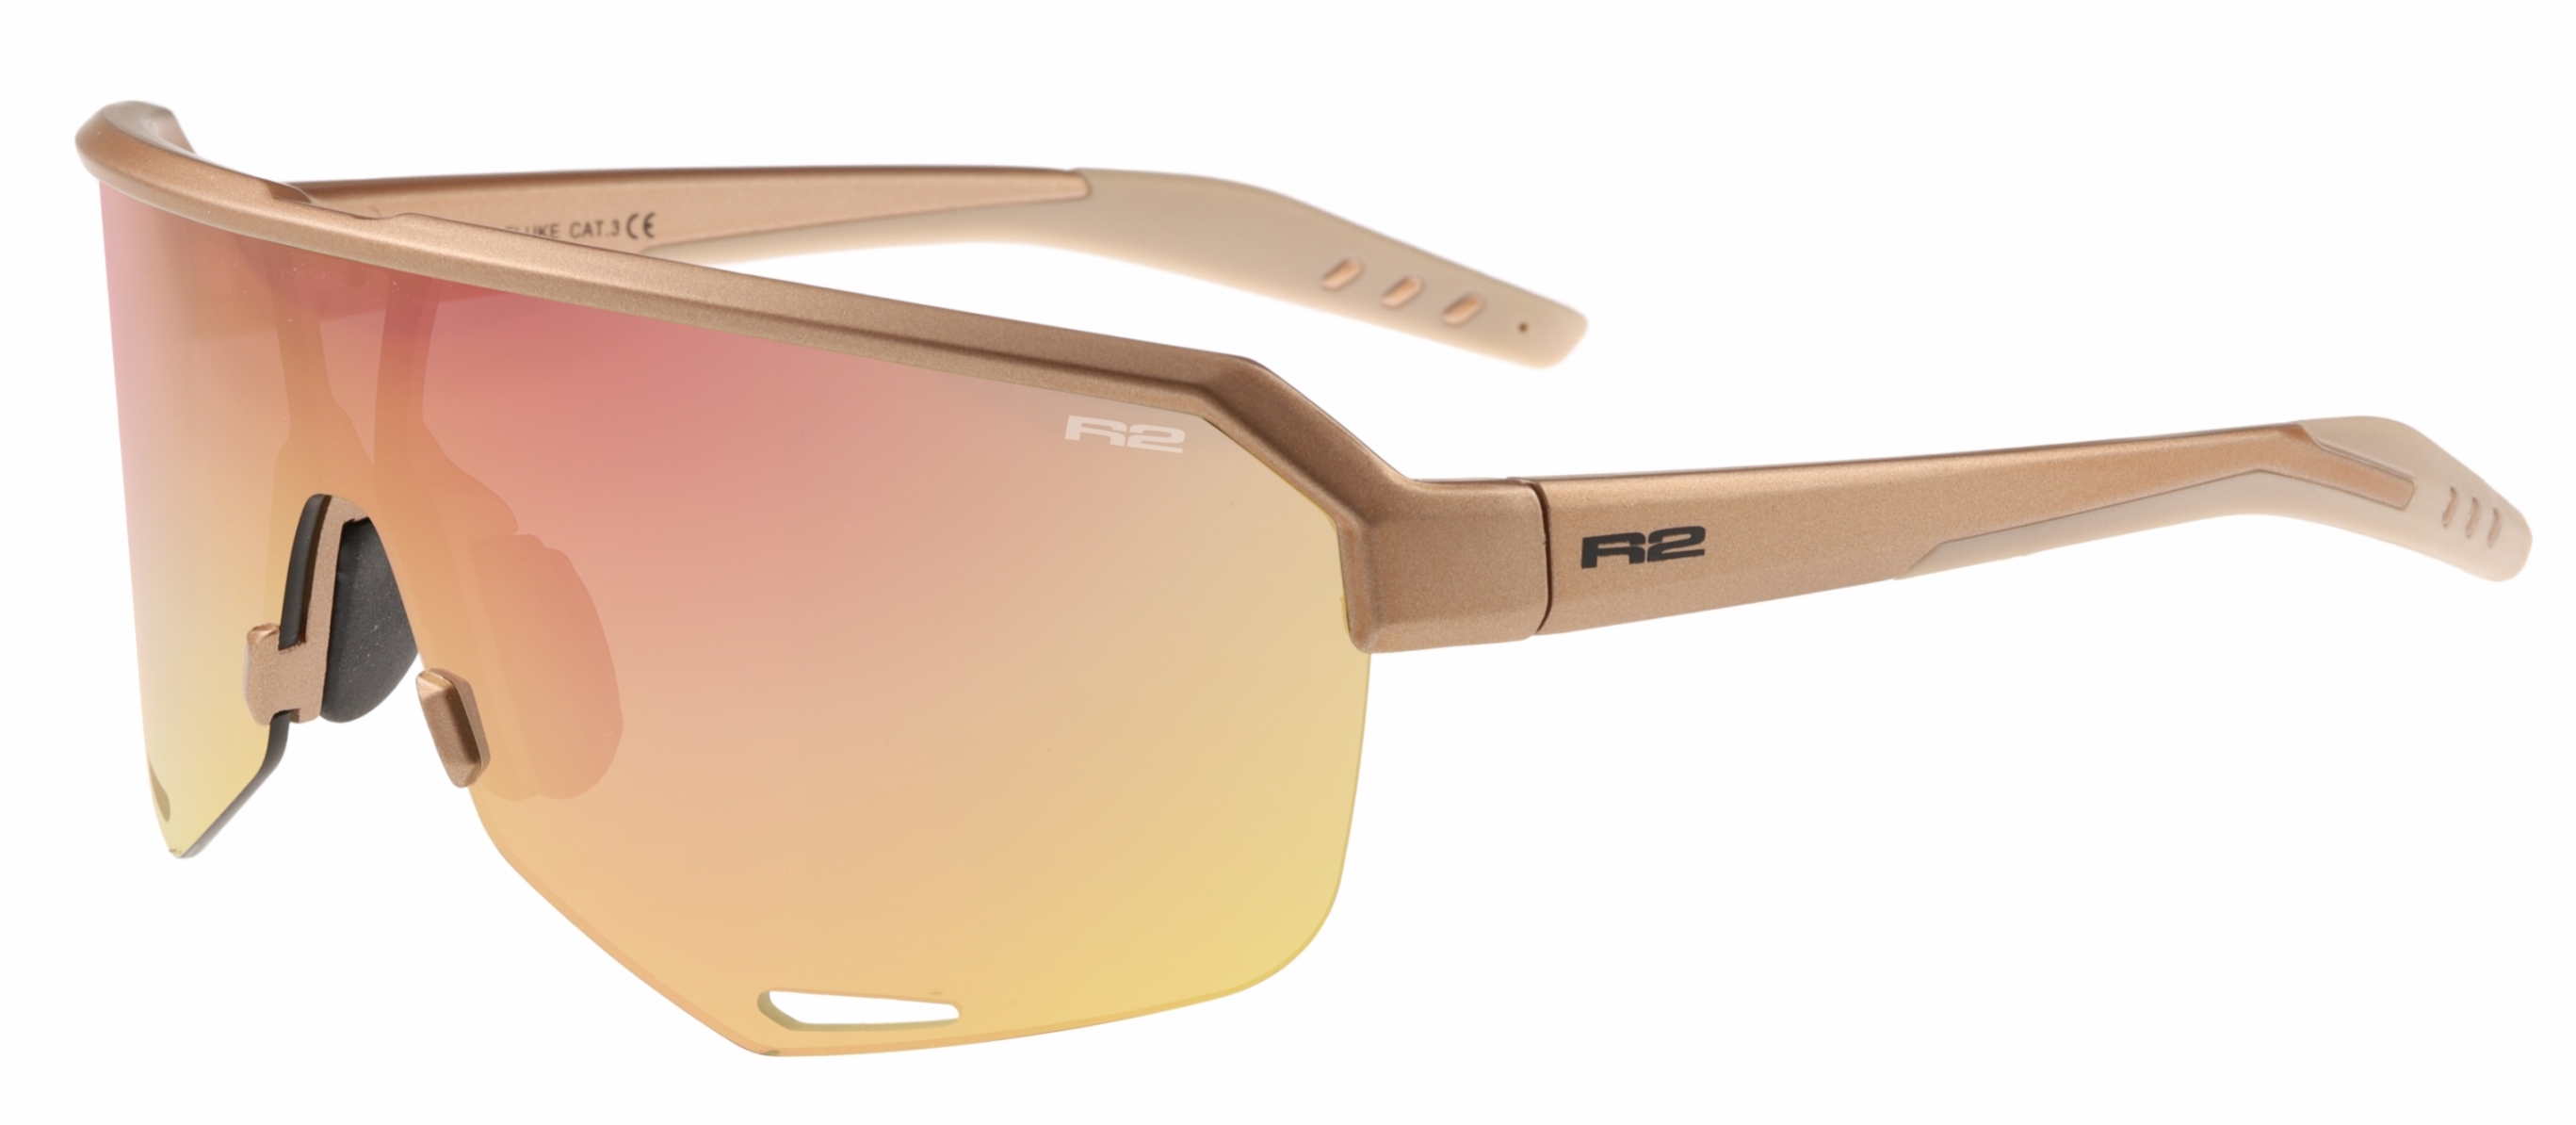 Sport sunglasses R2 FLUKE AT100K